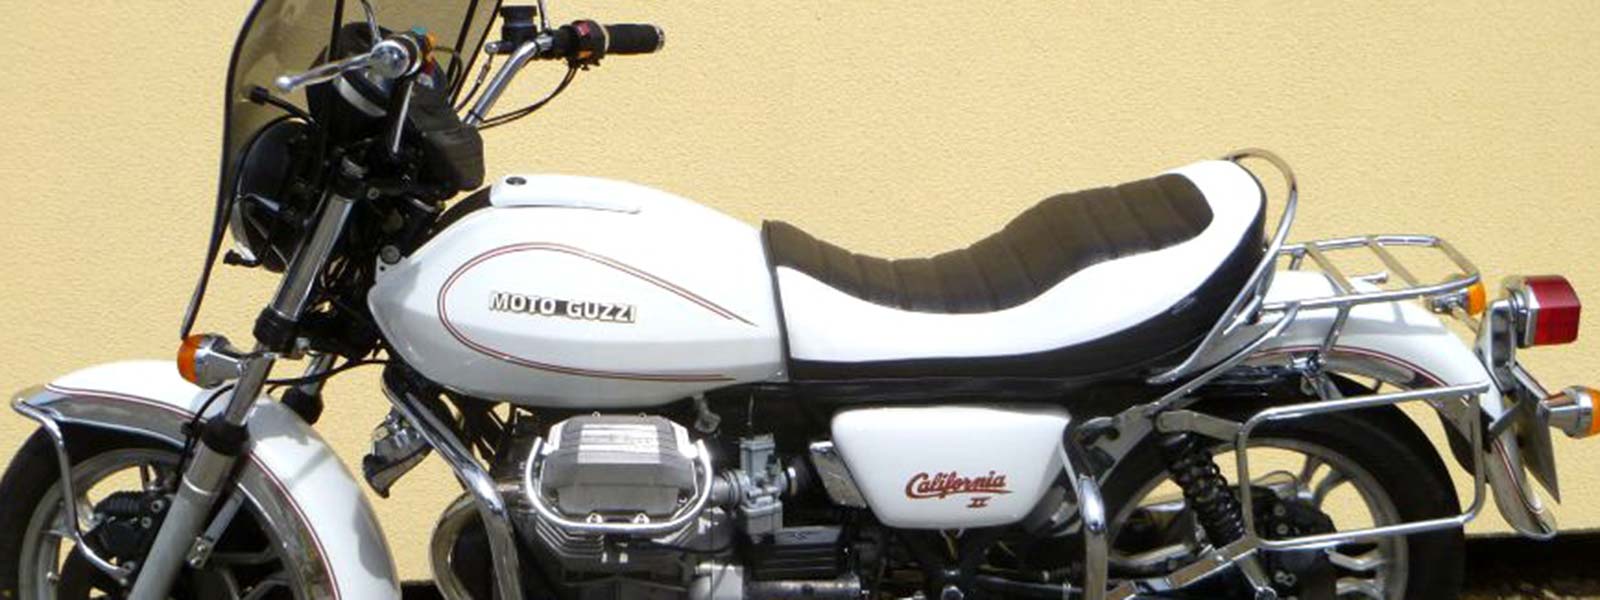 Umbau von Moto Guzzi Sitzbänken